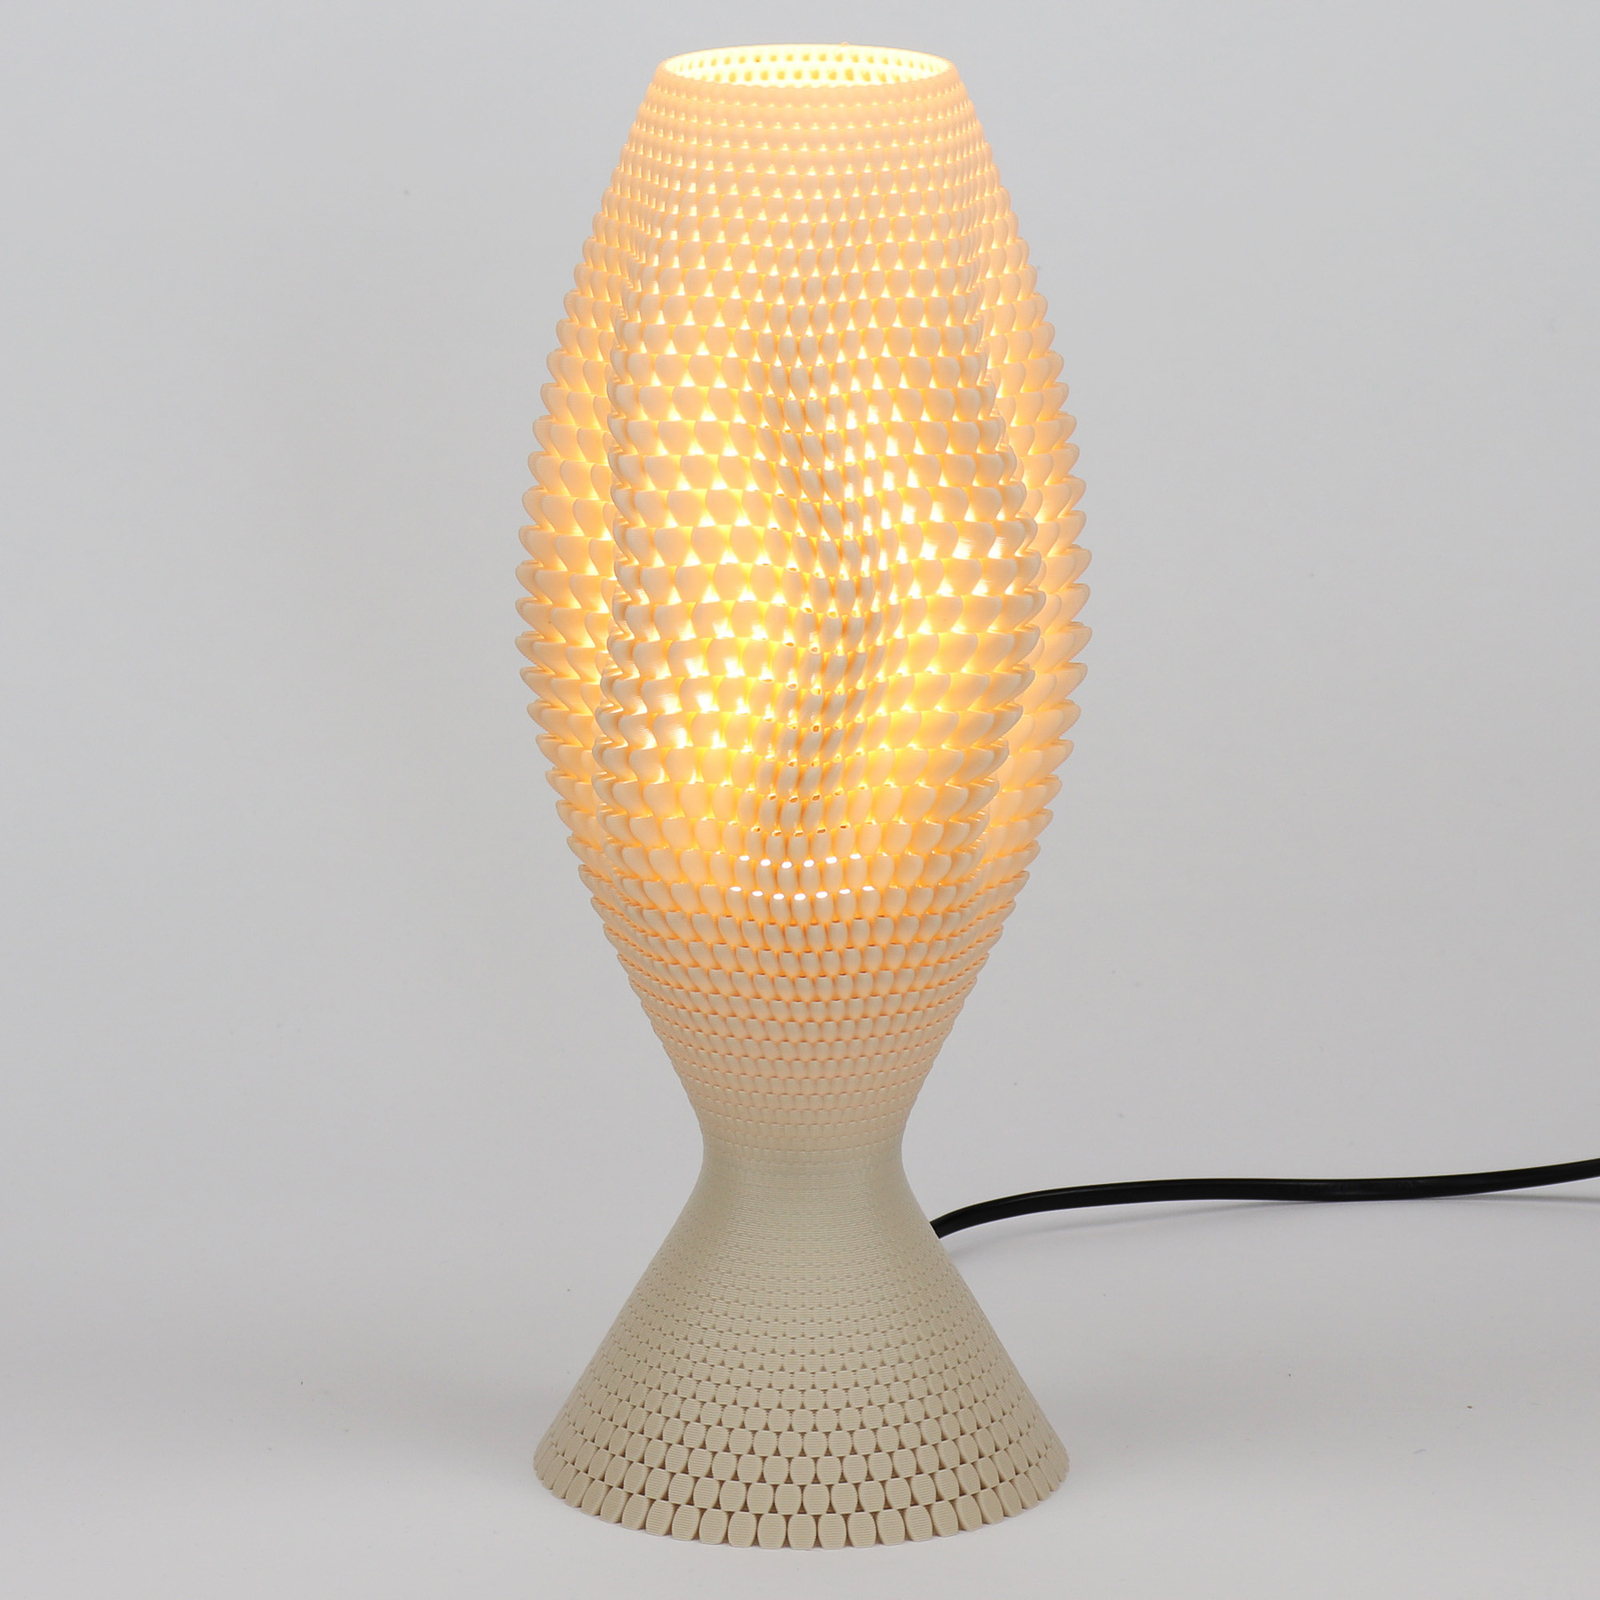 Koral asztali lámpa organikus anyagból, vászonból, 33 cm